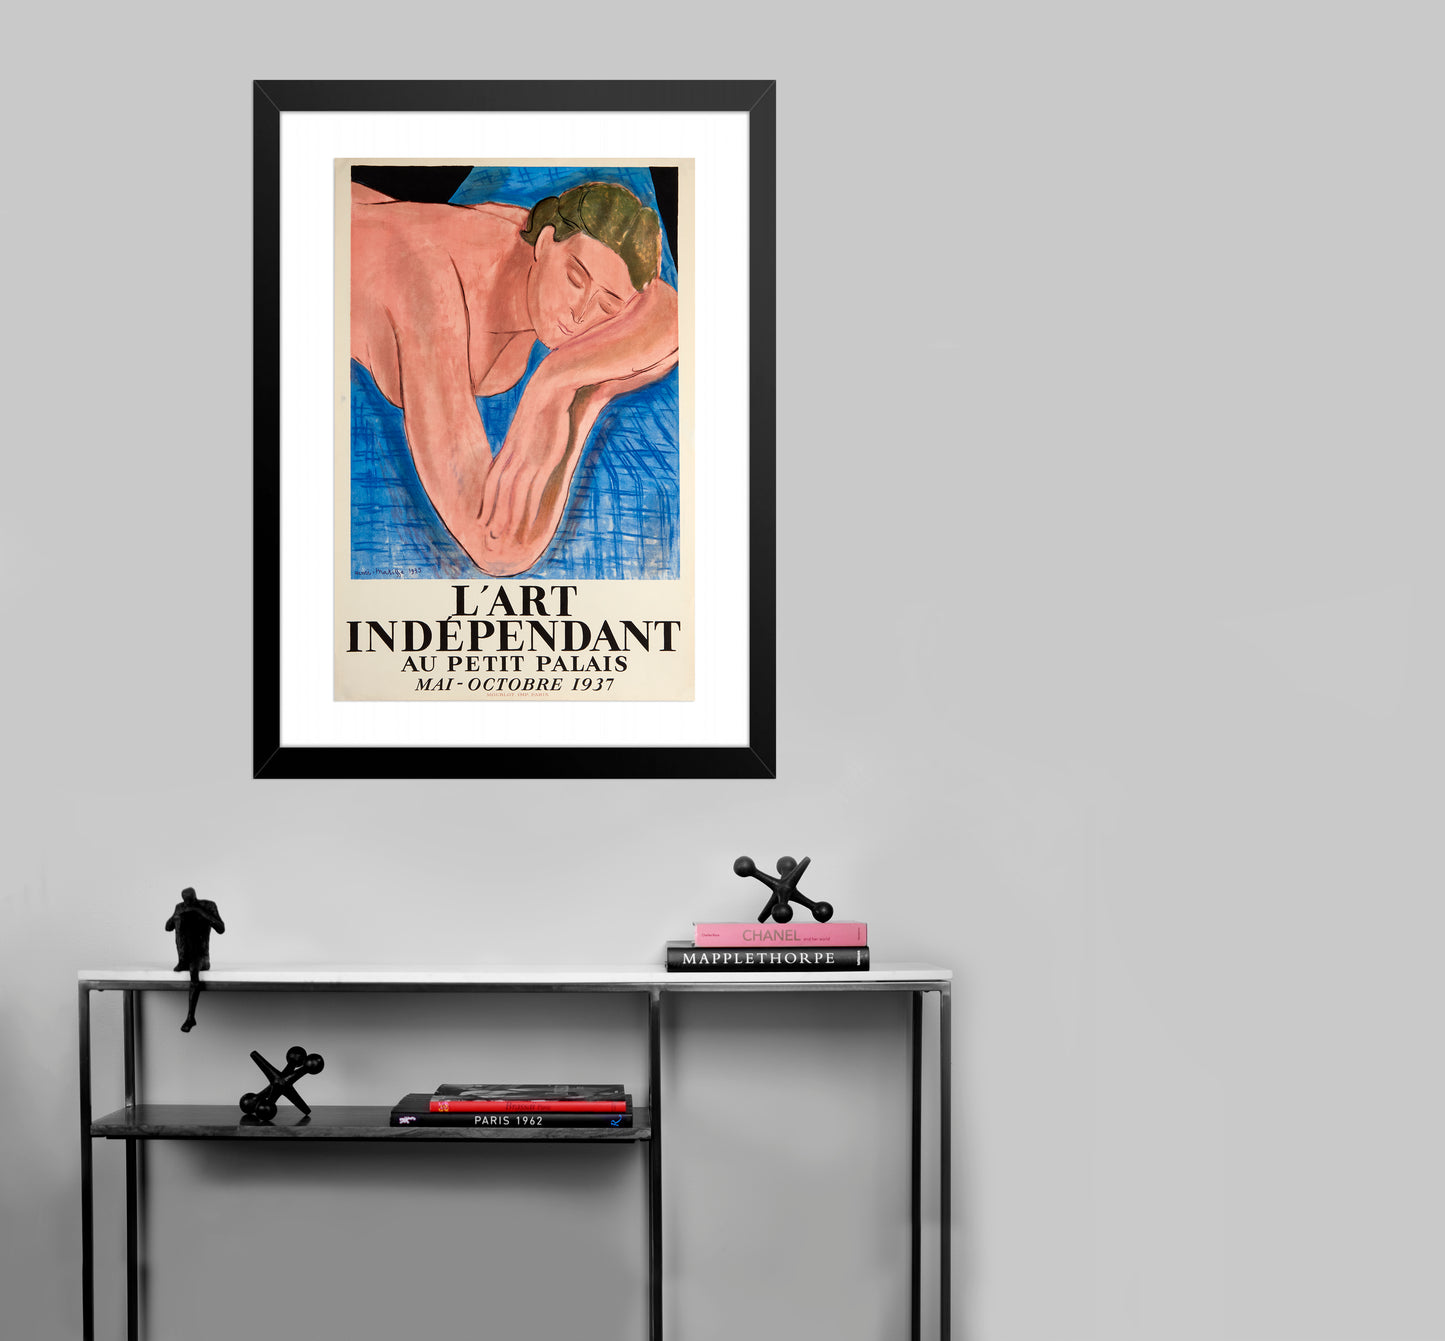 L'art Independant au Petit Palais by Henri Matisse - Mourlot Editions - Fine_Art - Poster - Lithograph - Wall Art - Vintage - Prints - Original